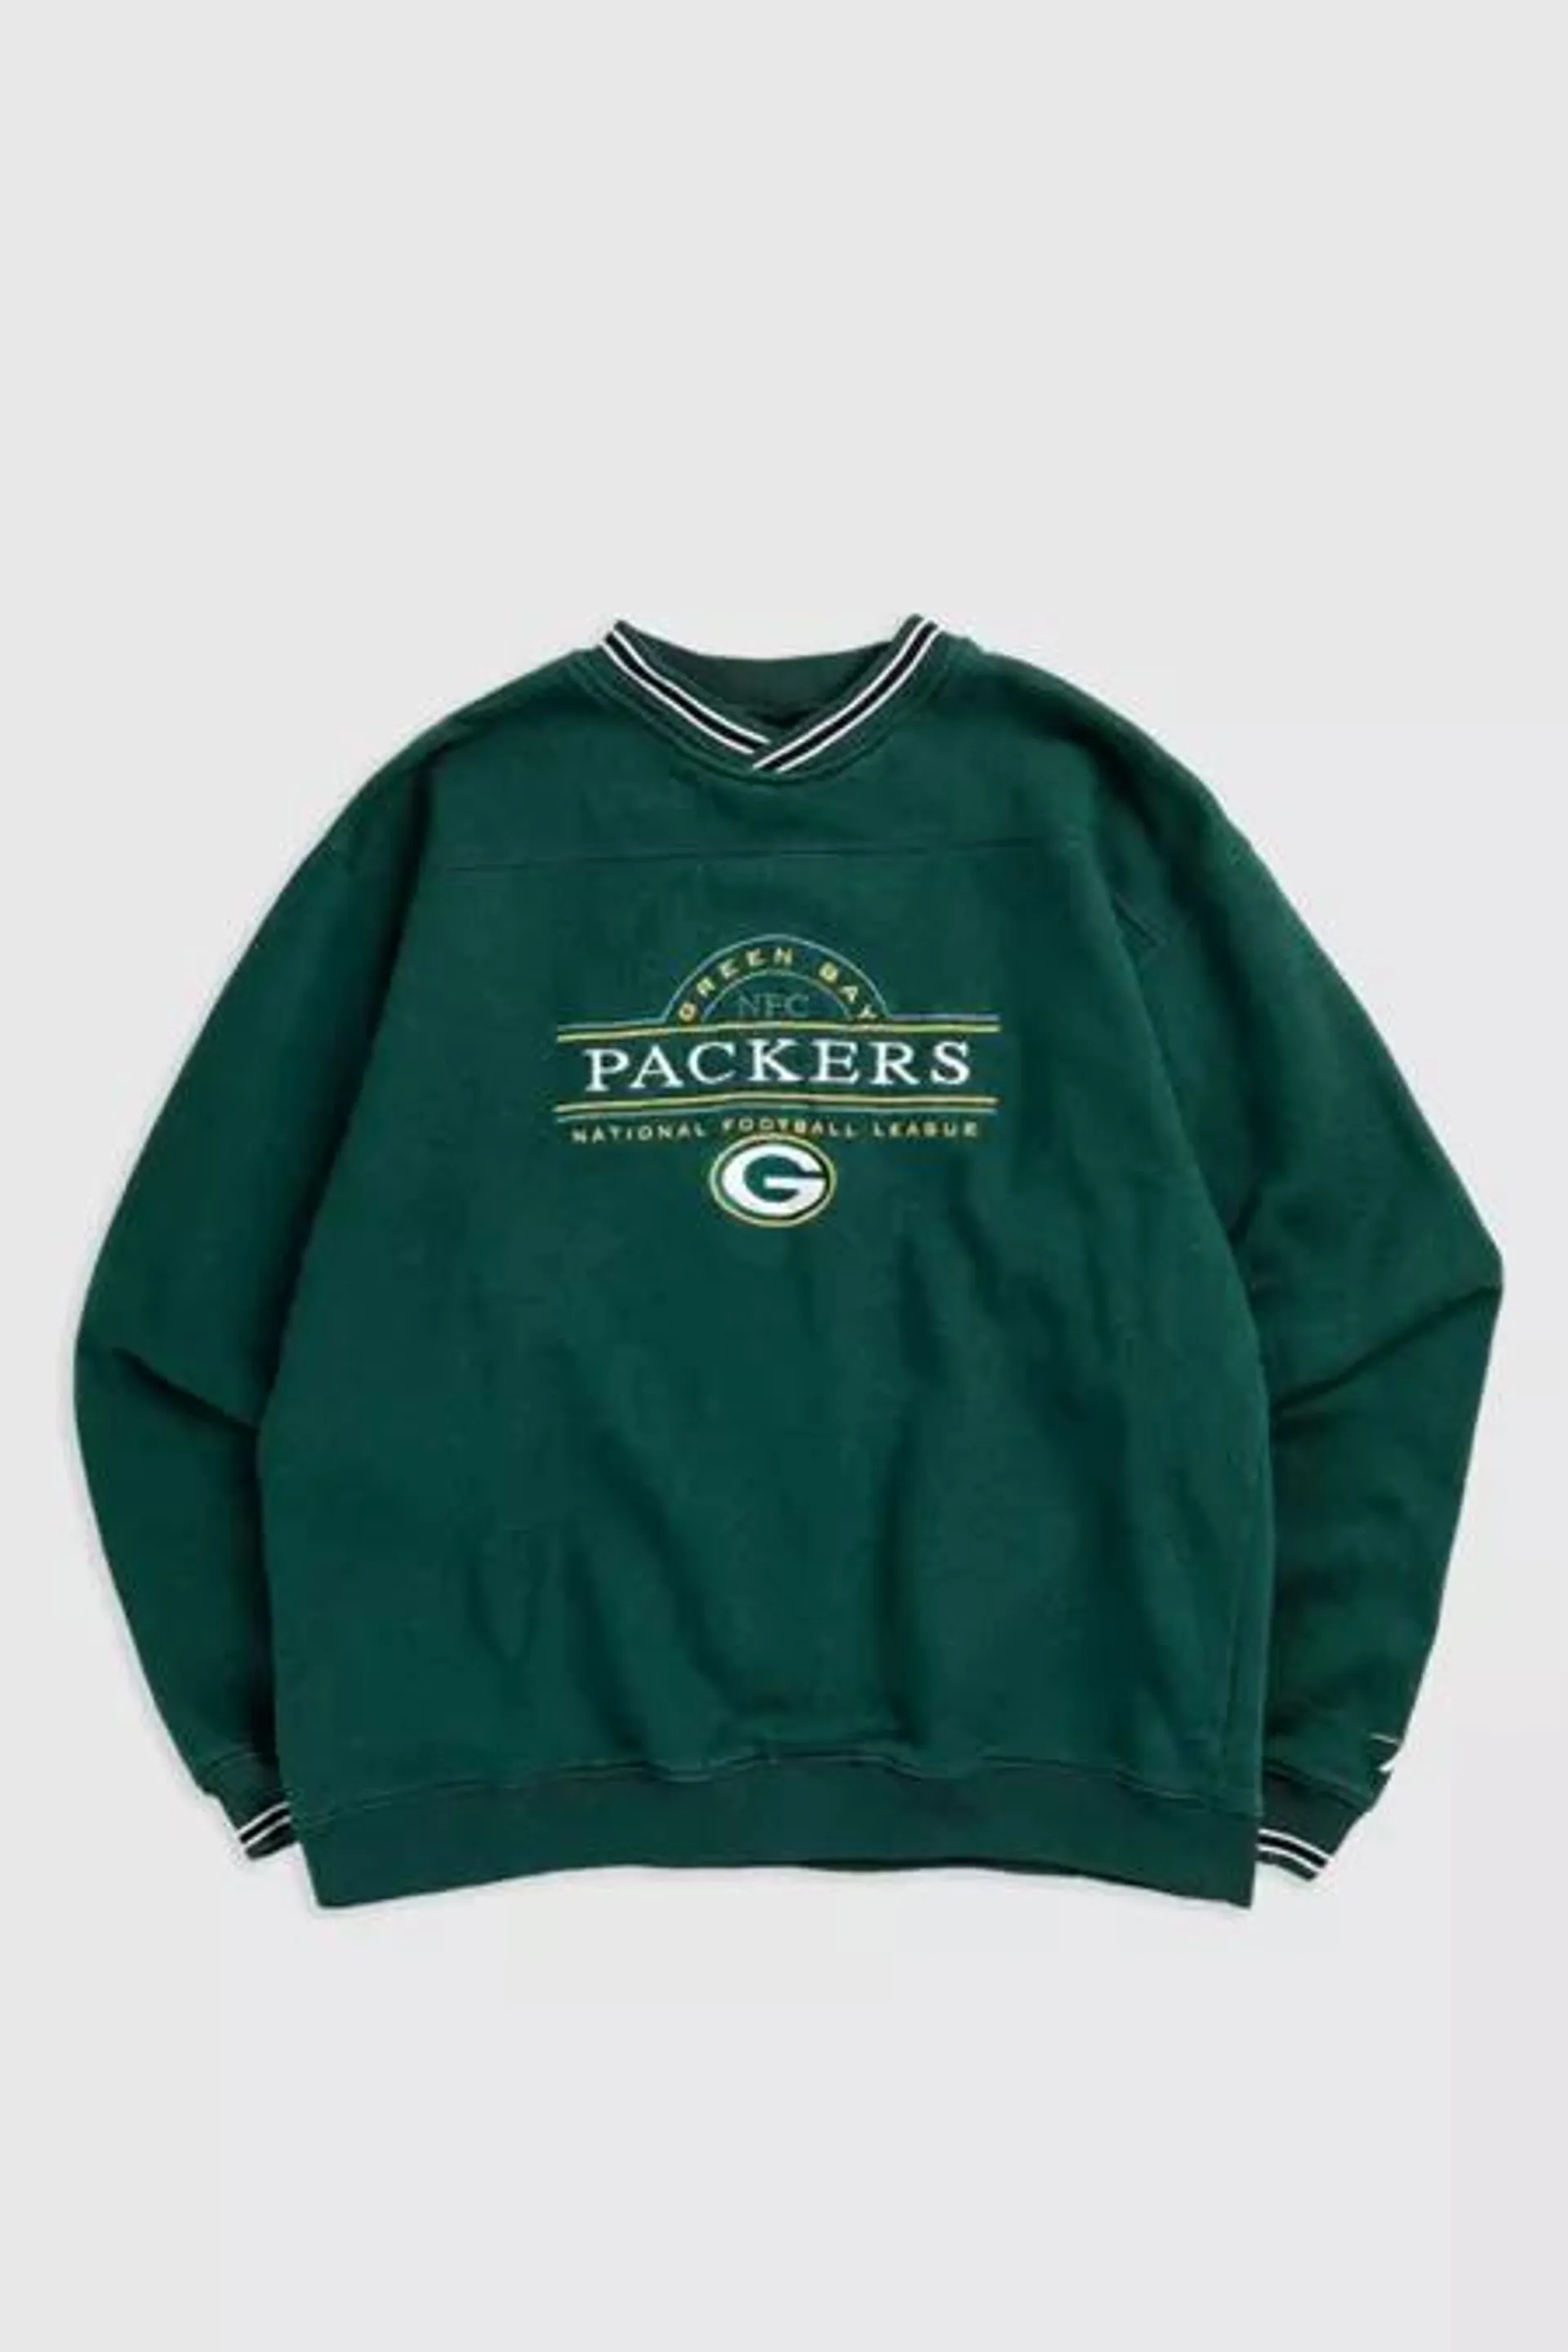 Vintage Greenbay Packers NFL Sweatshirt